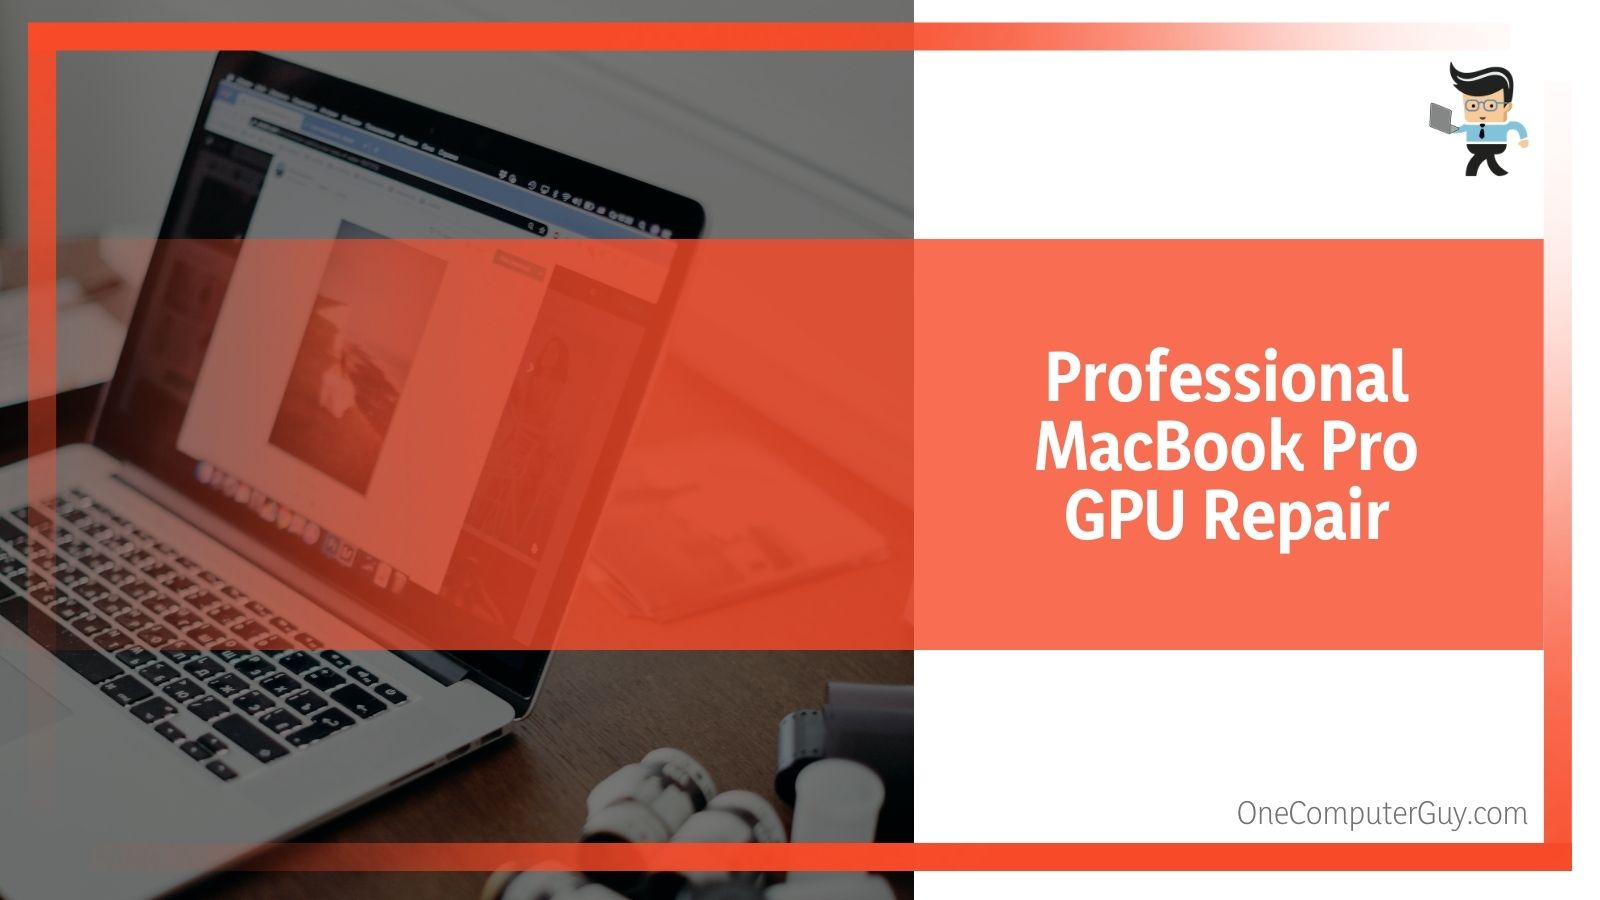 Professional MacBook Pro GPU Repair